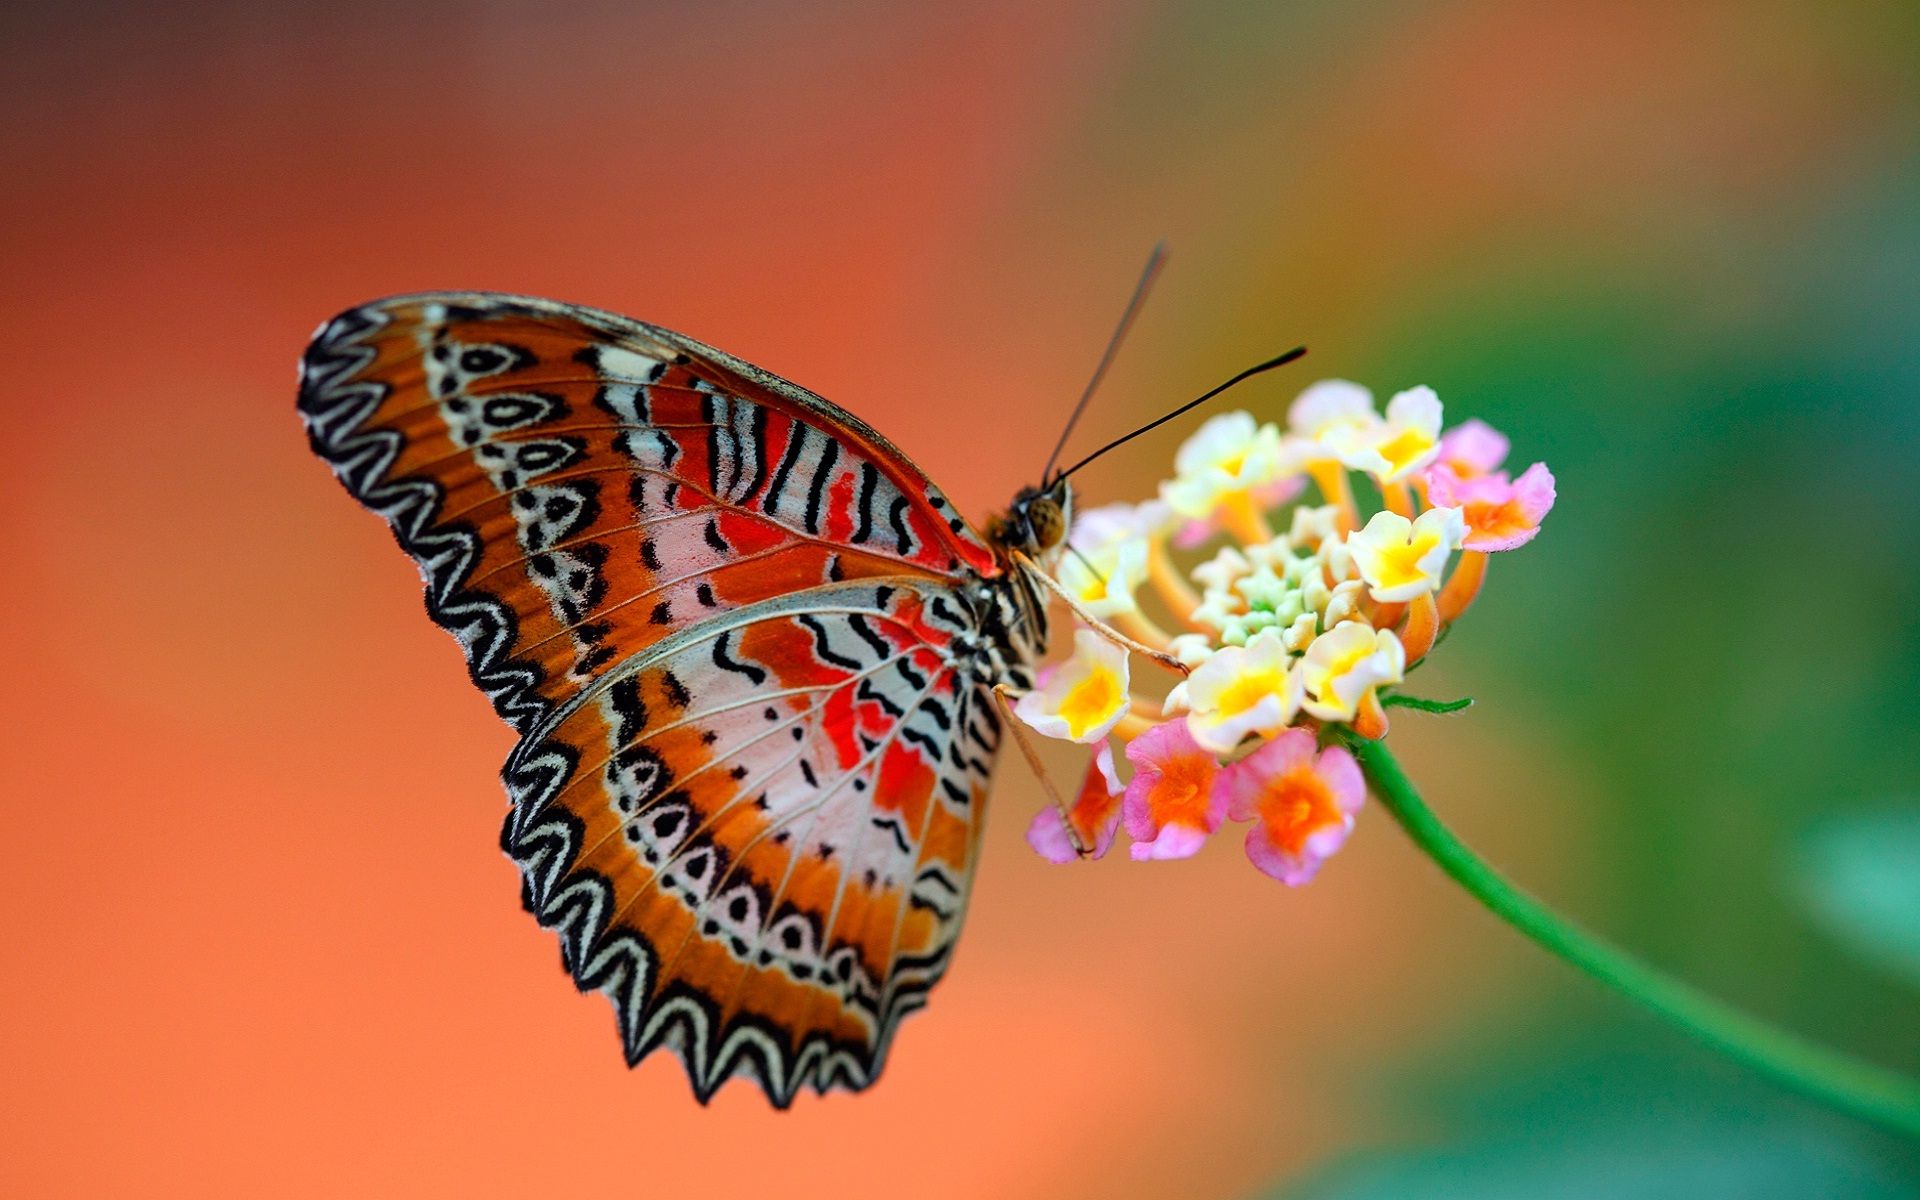 Butterfly on flower full HD wallpaper | HD Wallpapers Rocks